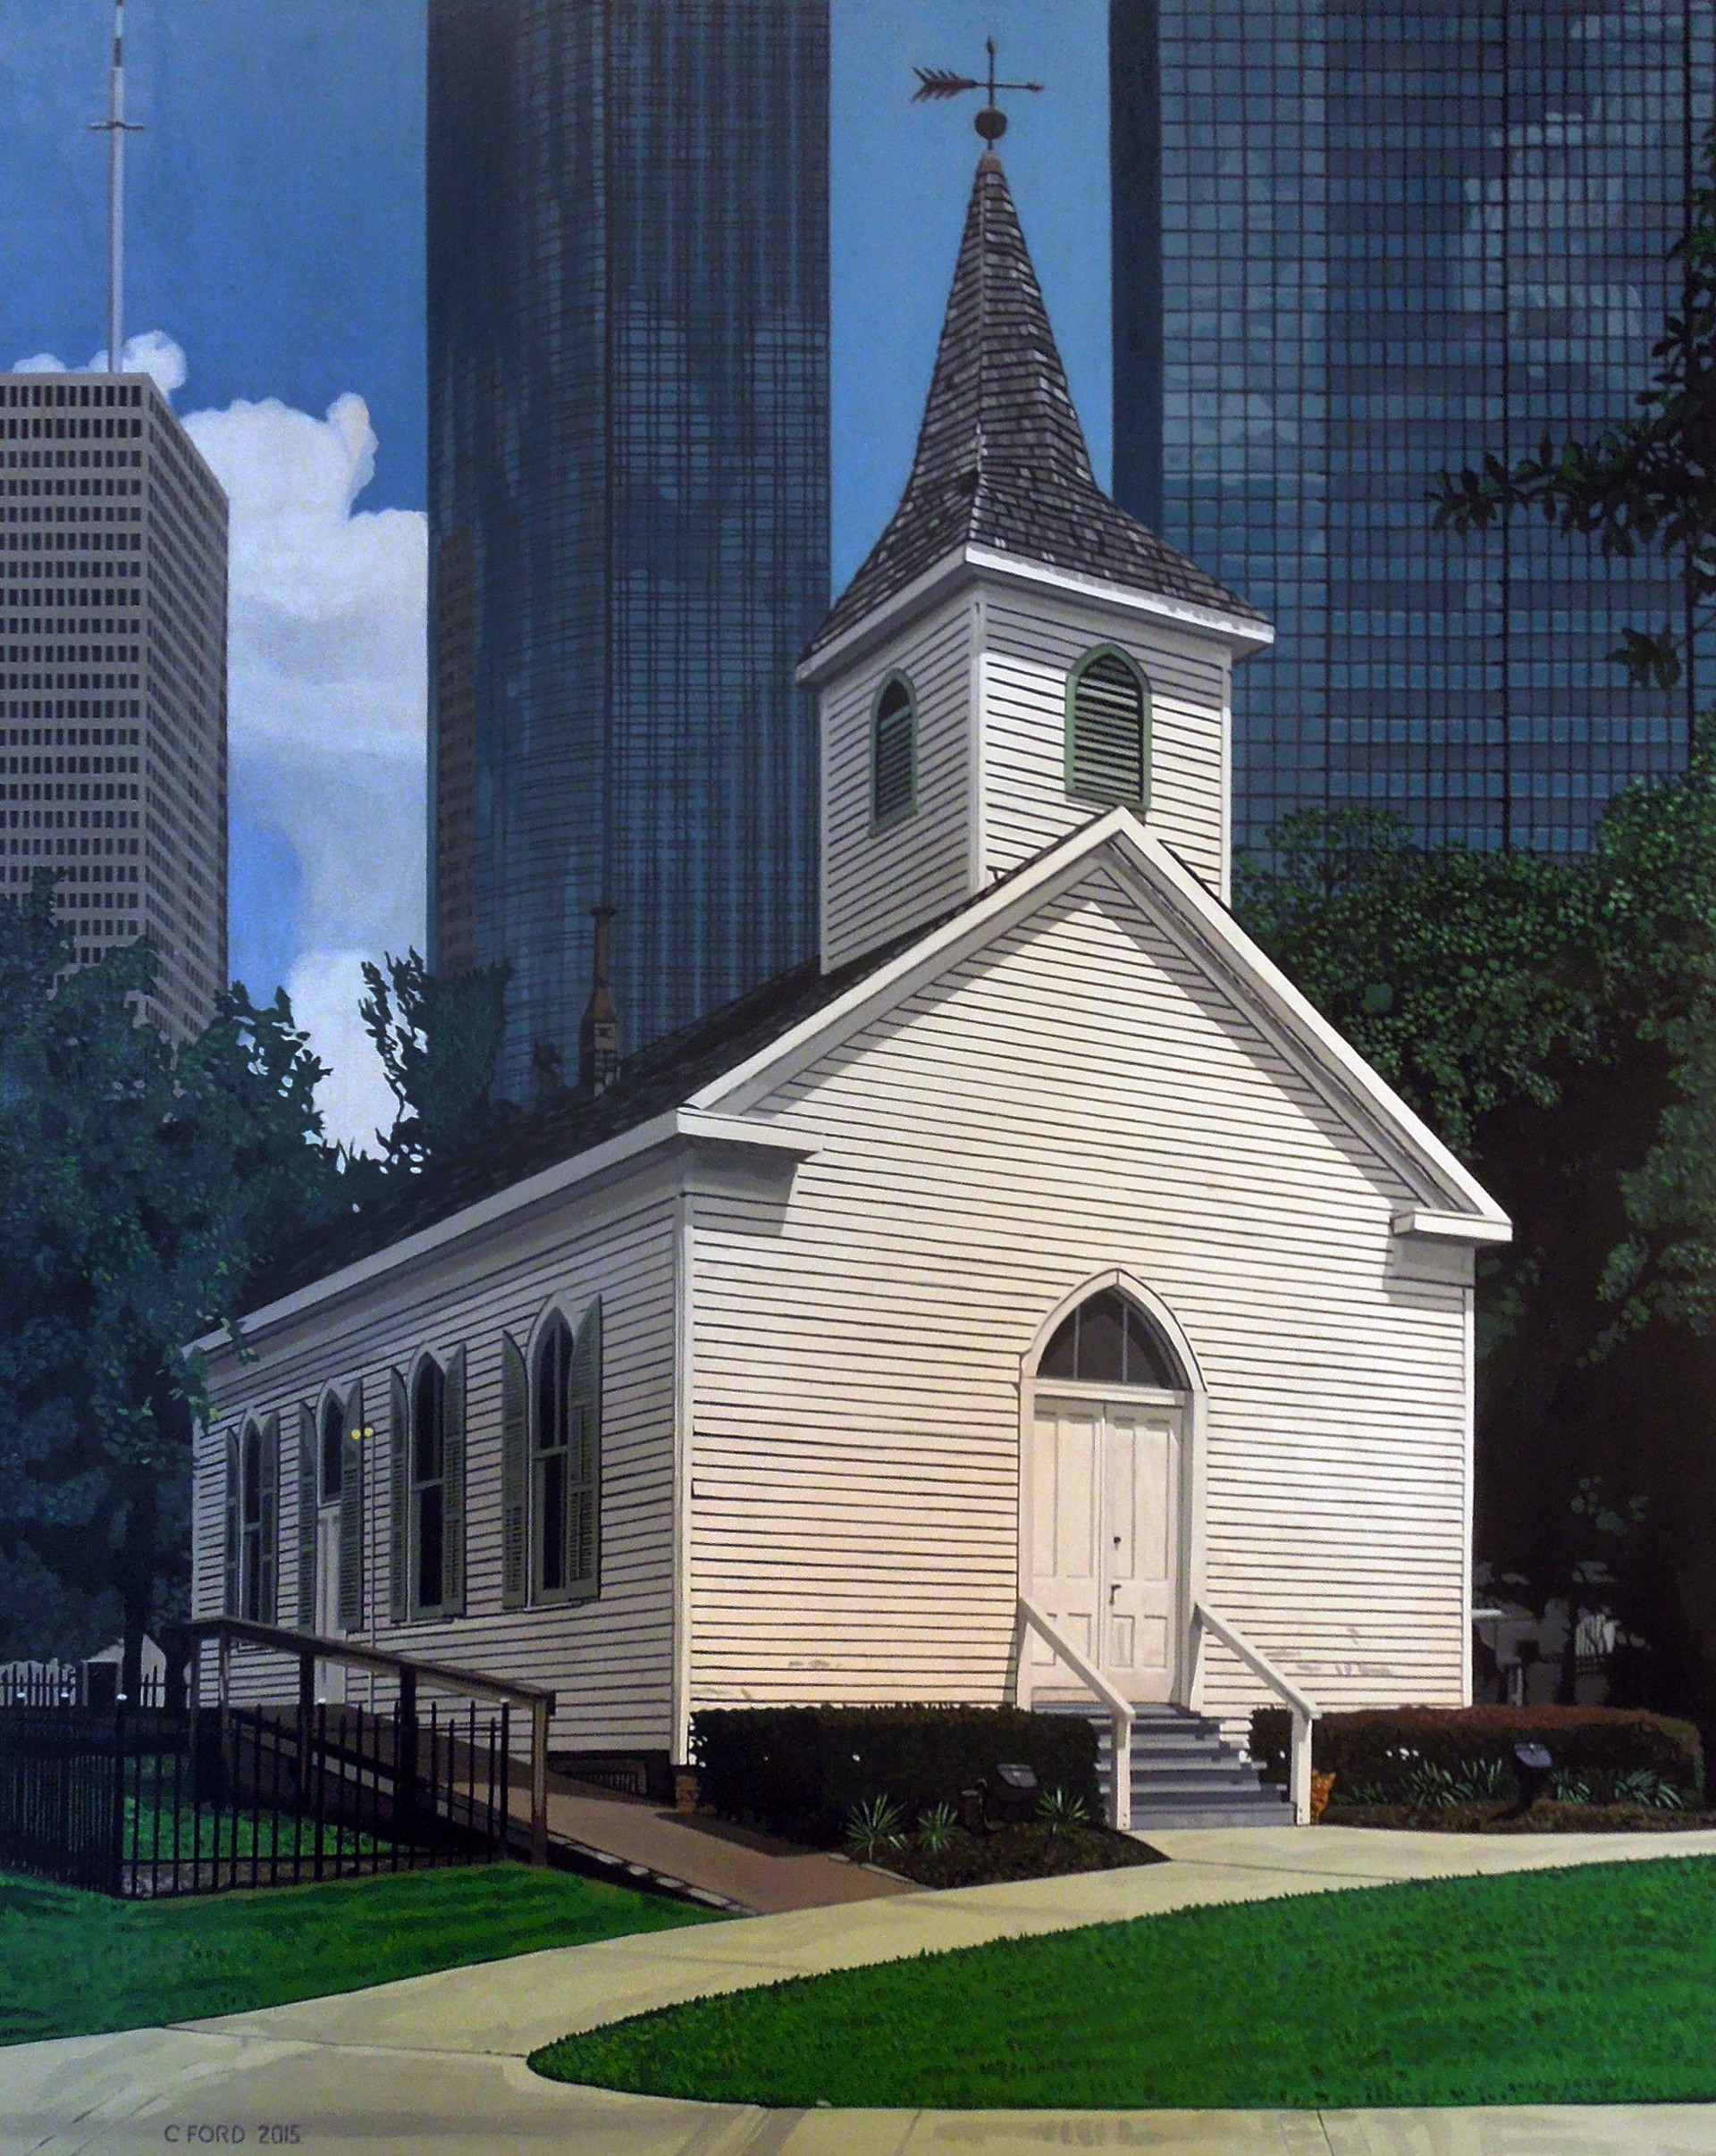 St. John Church, c. 1891, Sam Houston Park by Charles Ford